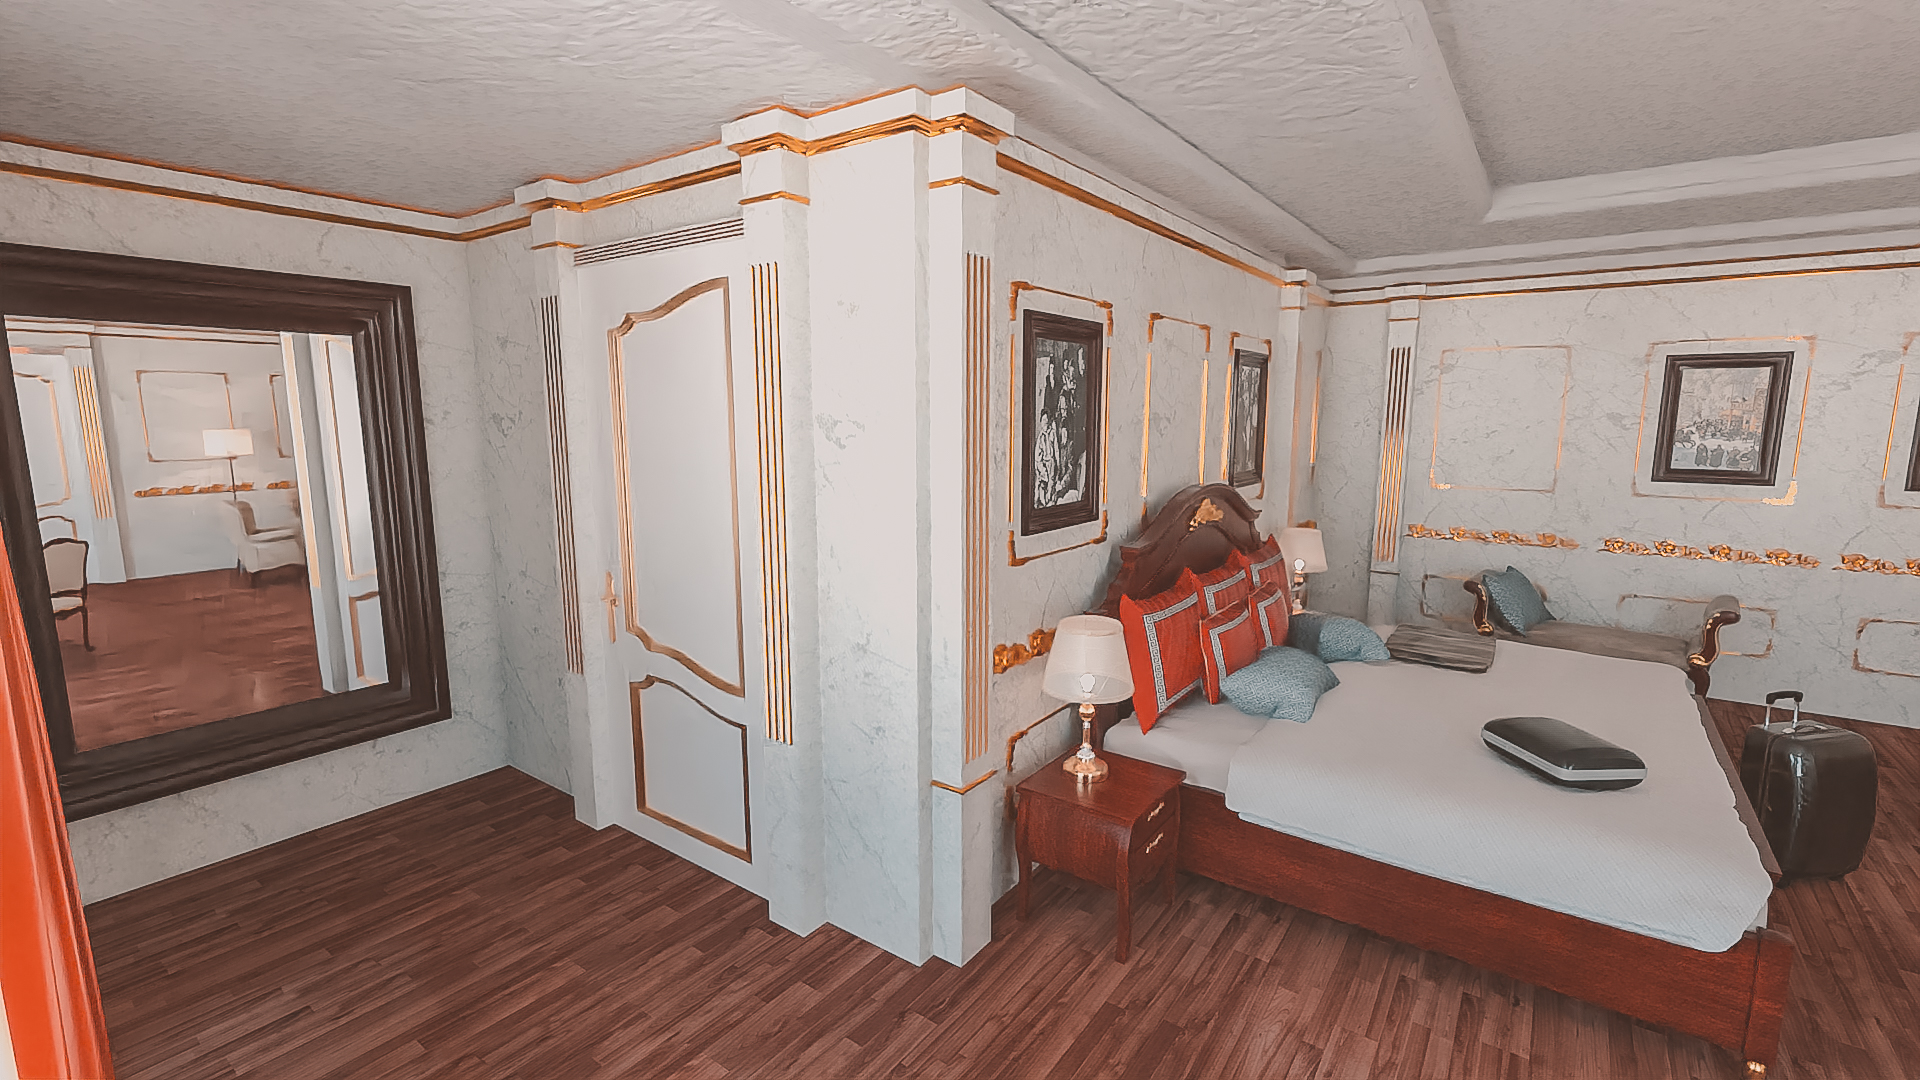 Russian Bedroom by: Tesla3dCorp, 3D Models by Daz 3D